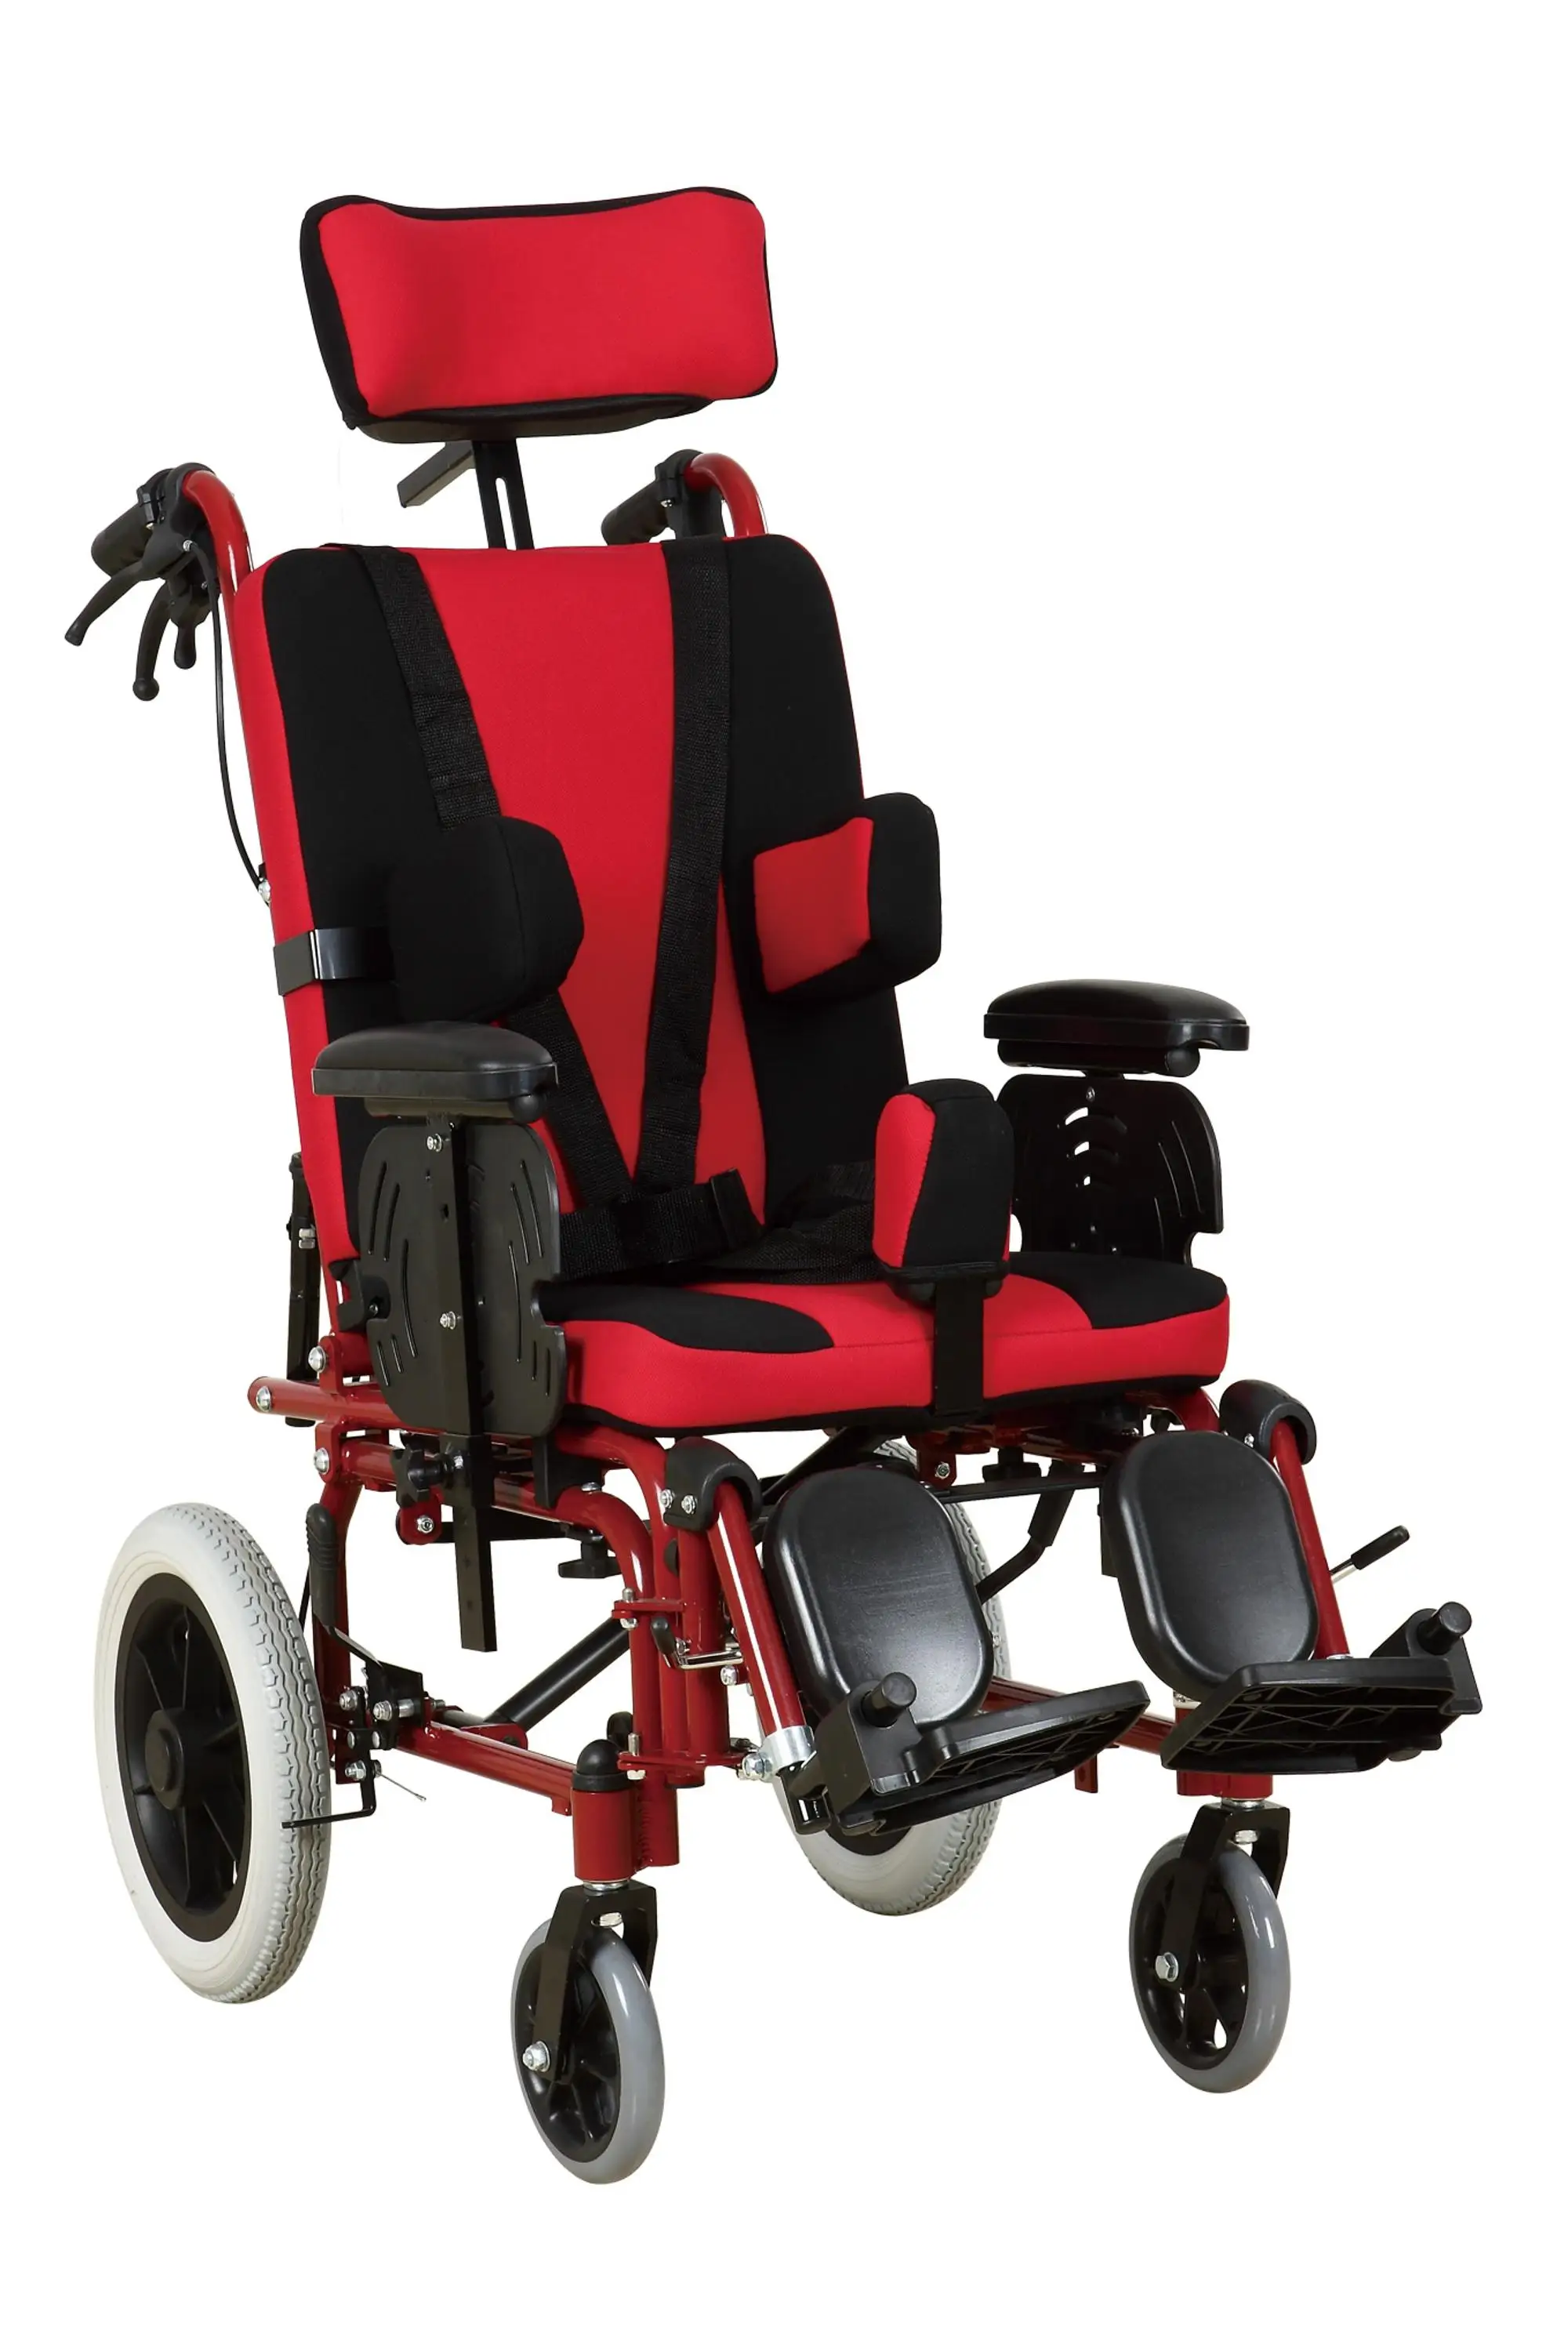 Сиденье для дцп. Мобилити адванс коляска для ДЦП. Адаптивный матрас в коляску для ДЦП. ДЦП стул. Кресло для ДЦП.